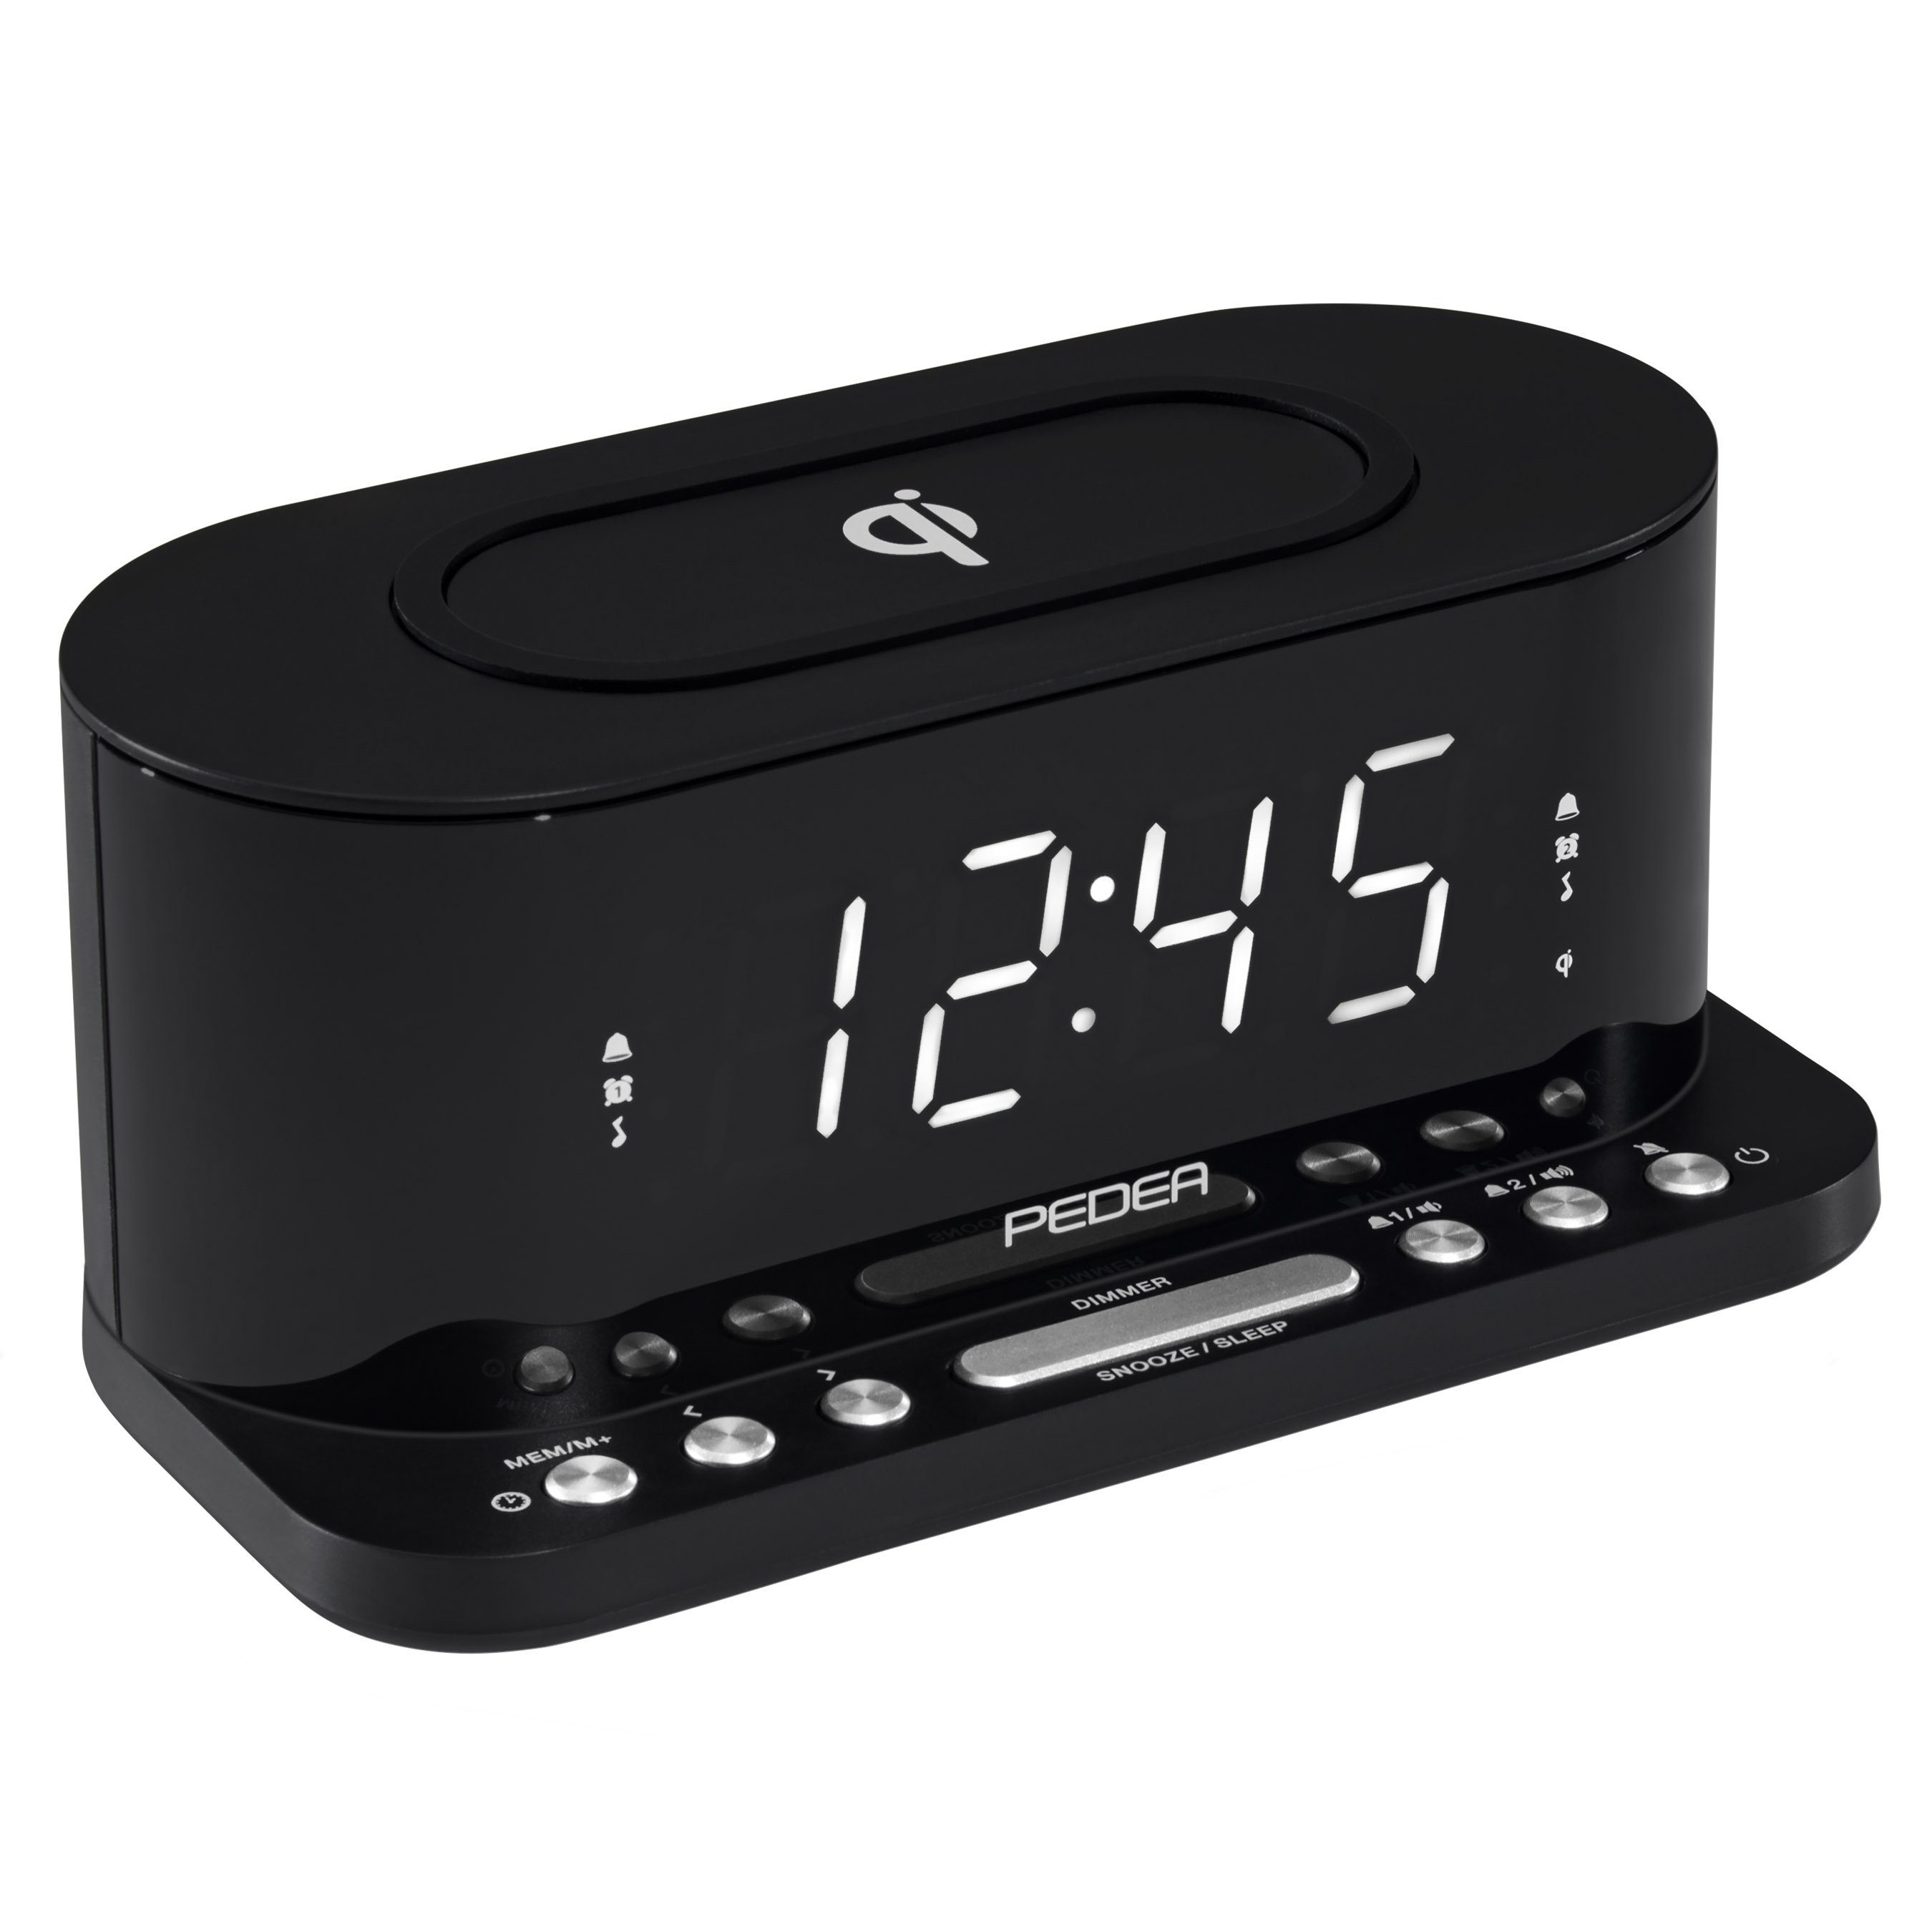 Sleep FM mit Snooze-Funktion & Weckzeiten, Radiowecker PEDEA LED-Bildschirm, Funktion, QI-Charging Radio, 2